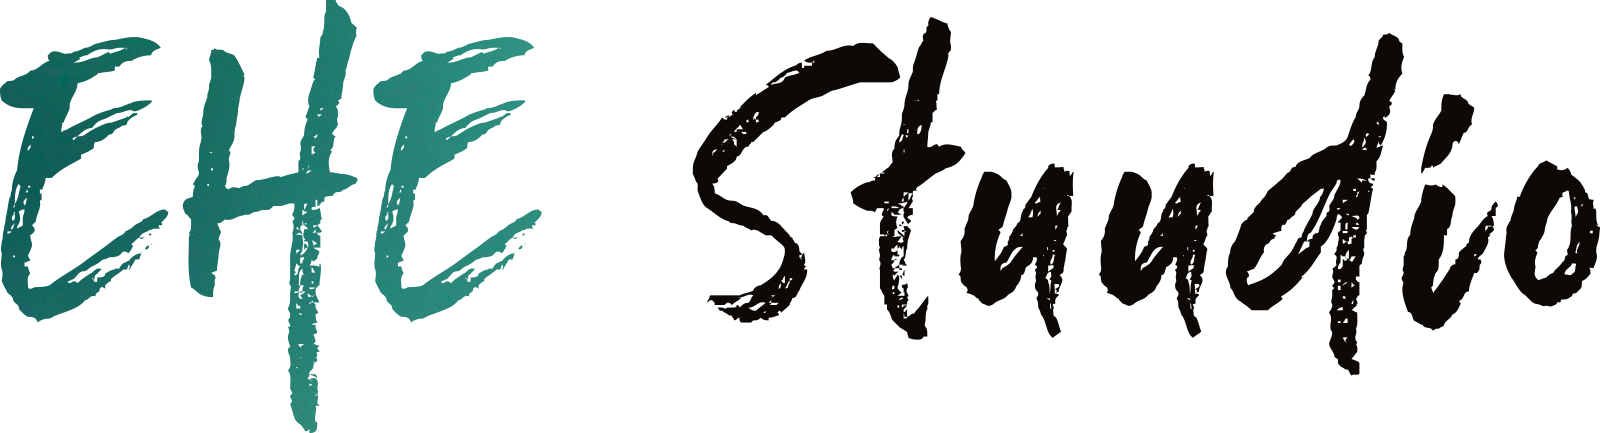 Ehe stuudio logo